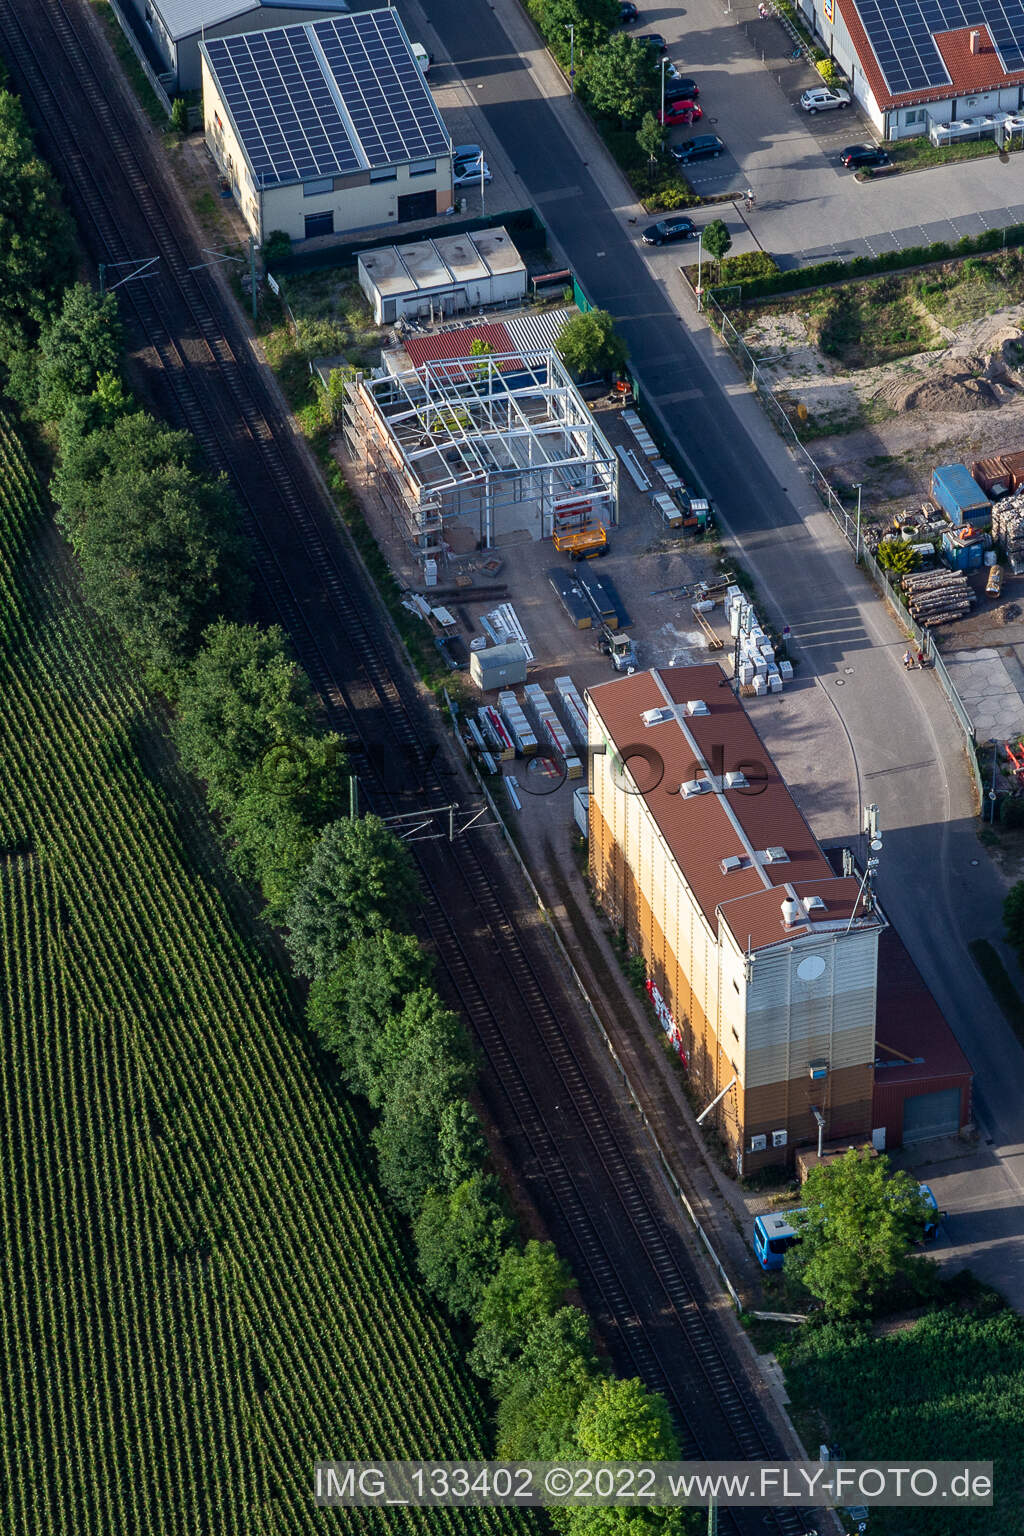 Luftbild von Raiffeisen Warenhandelsgesellschaft Südpfalz mbH in Rheinzabern im Bundesland Rheinland-Pfalz, Deutschland